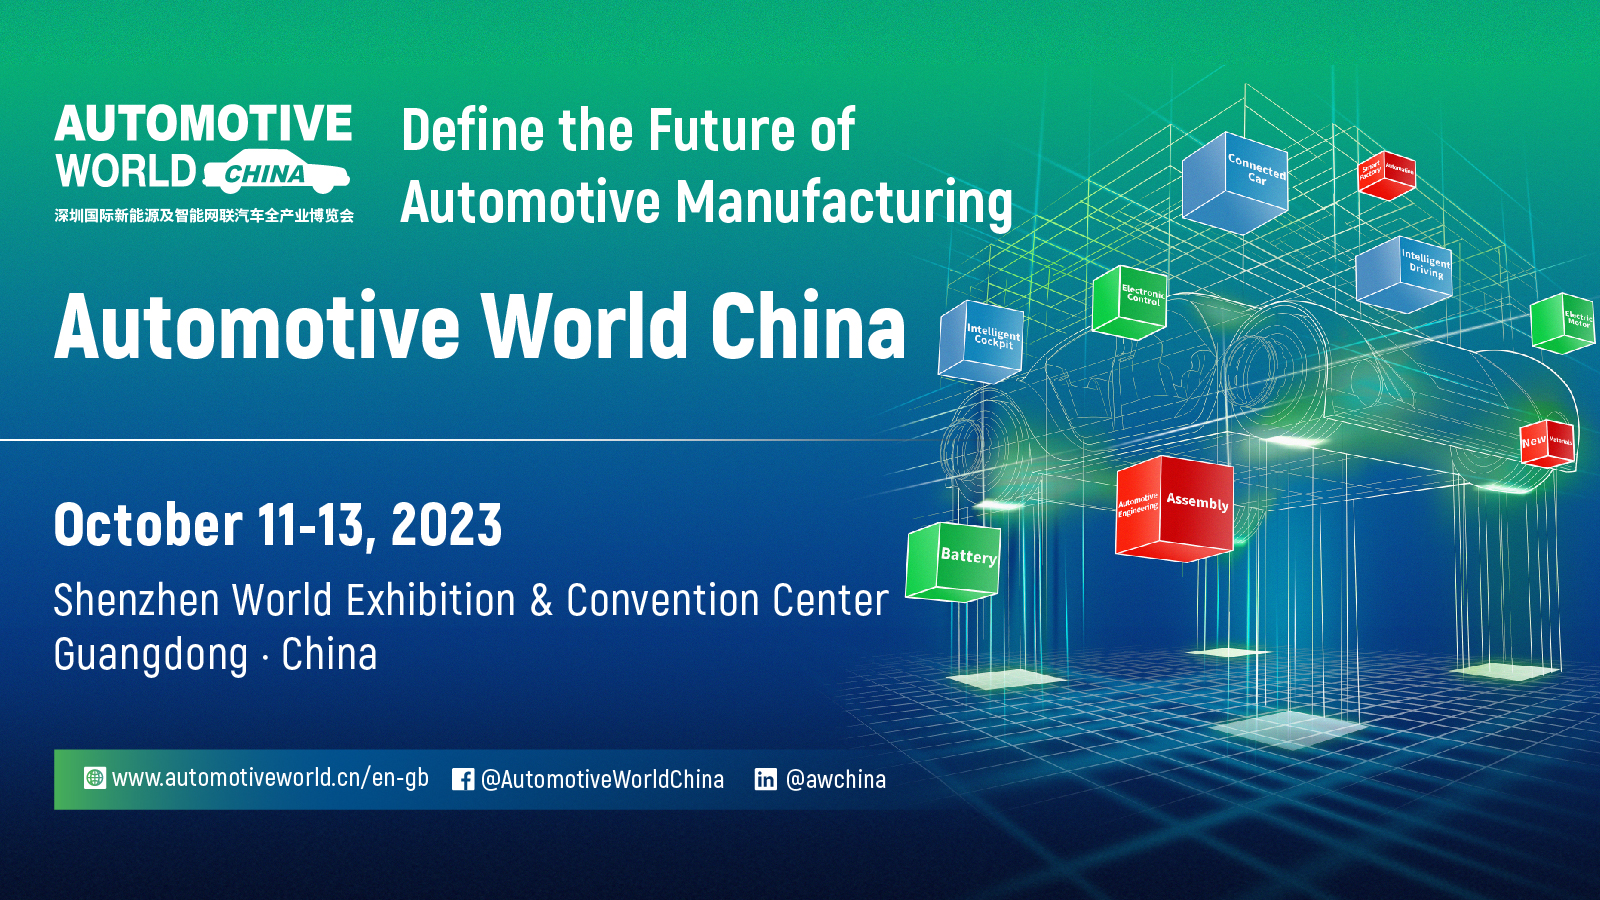 Automotive World China, Shenzhen, Guangdong, China